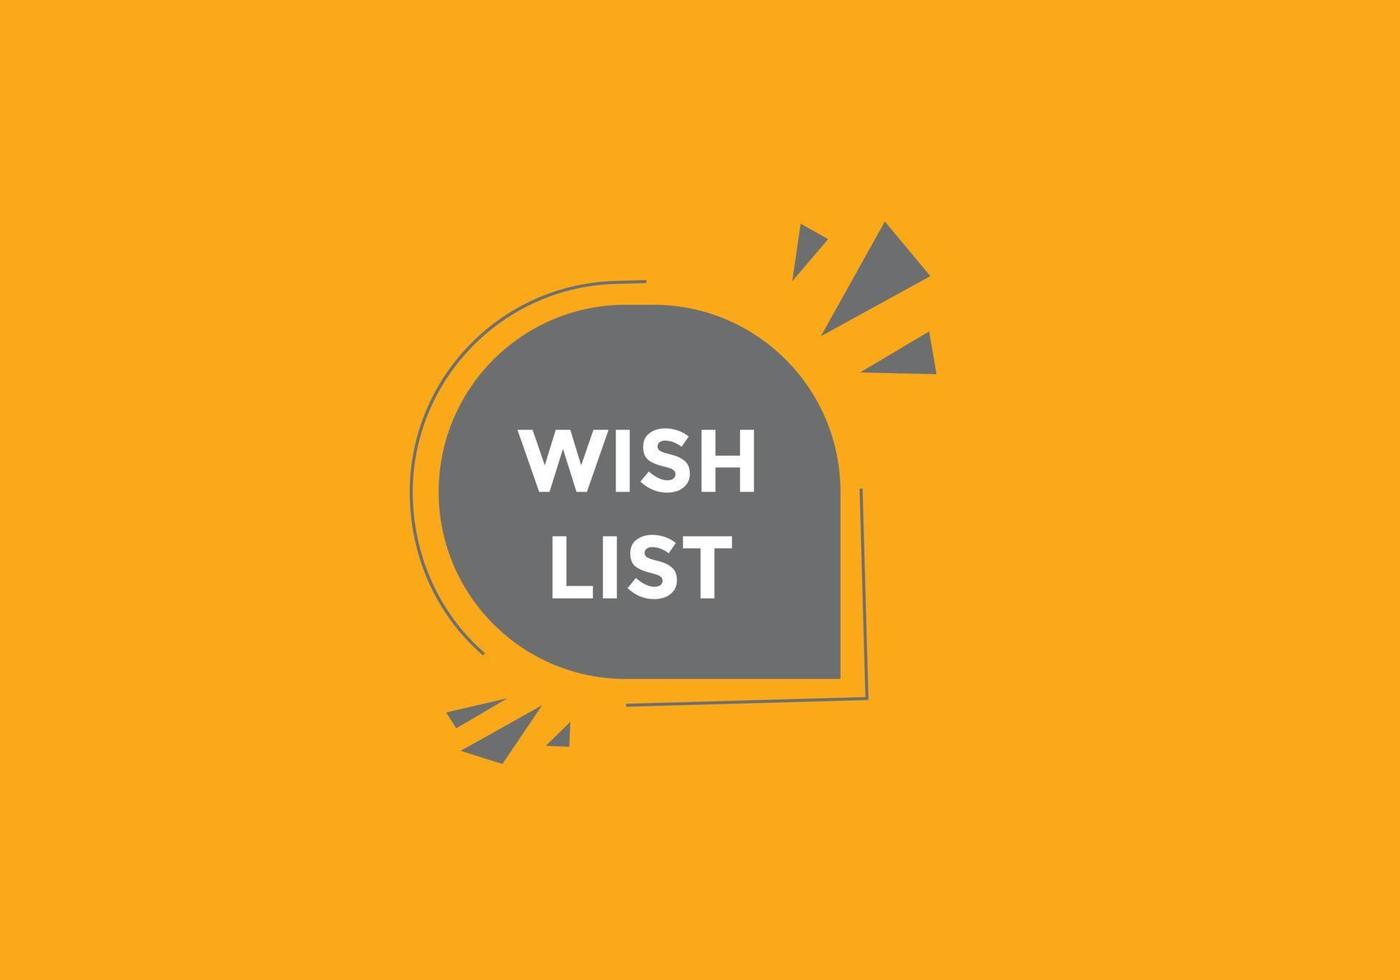 botão de texto da lista de desejos. melhor bolha de discurso de serviço. banner web colorido da lista de desejos. ilustração vetorial vetor